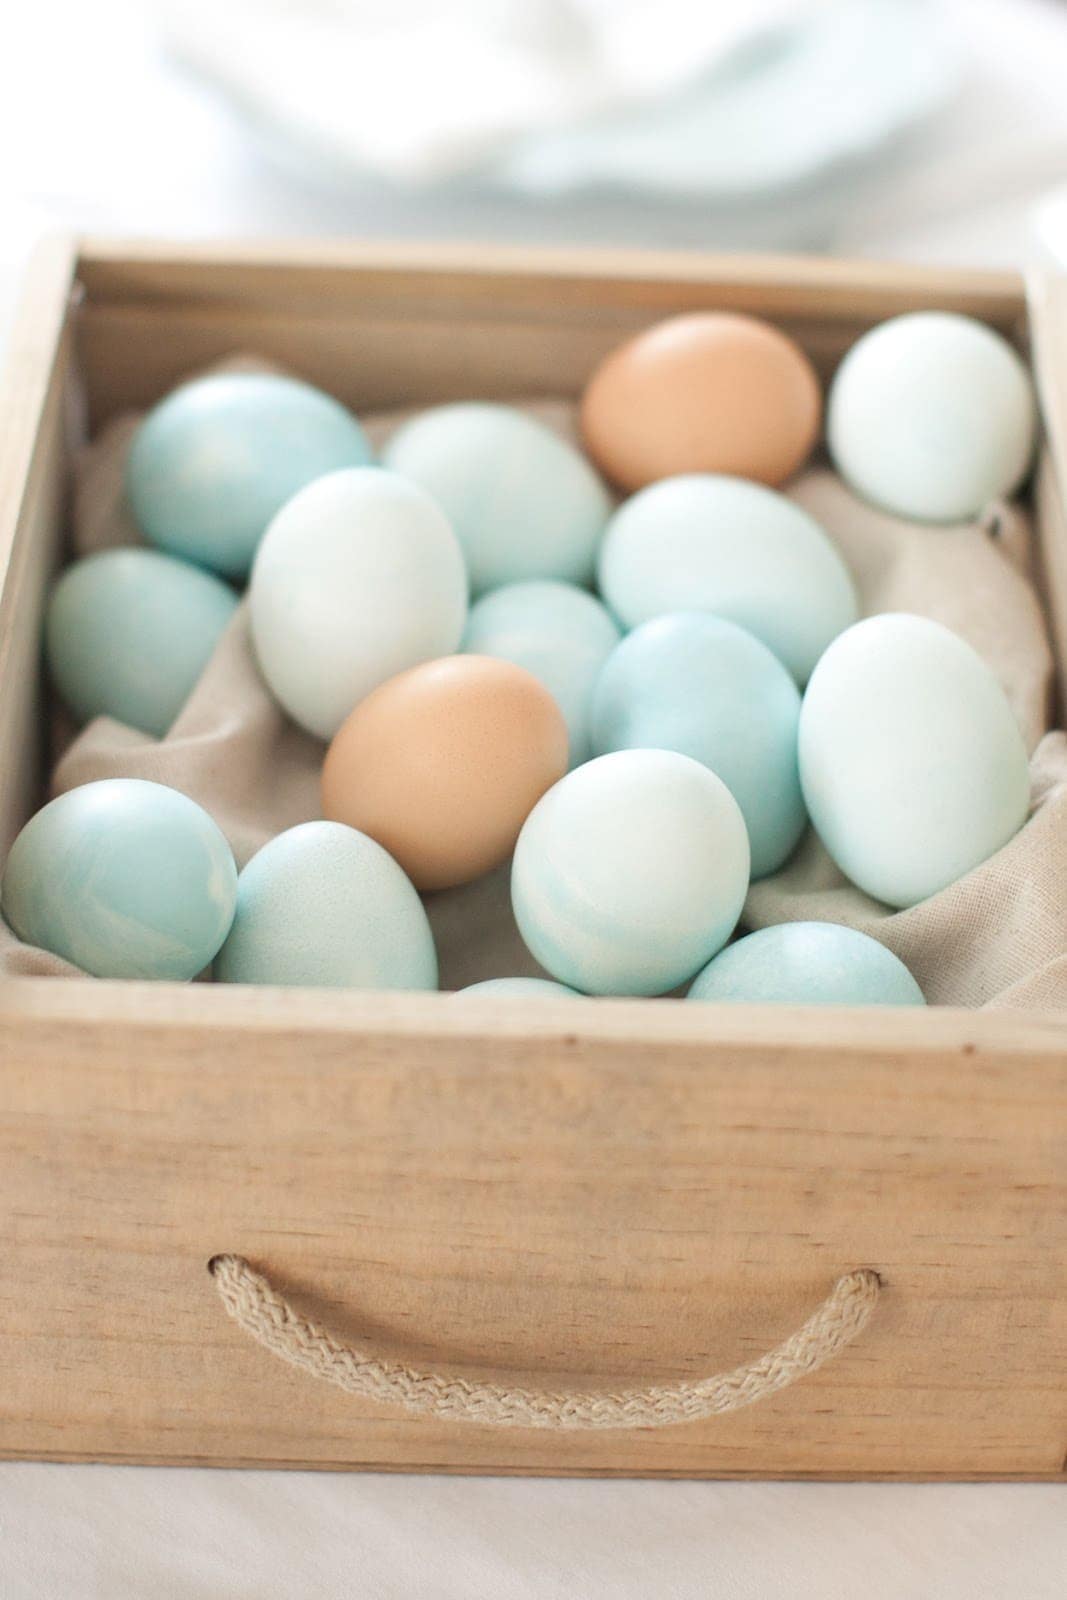 一篮子五颜六色的鸡蛋。